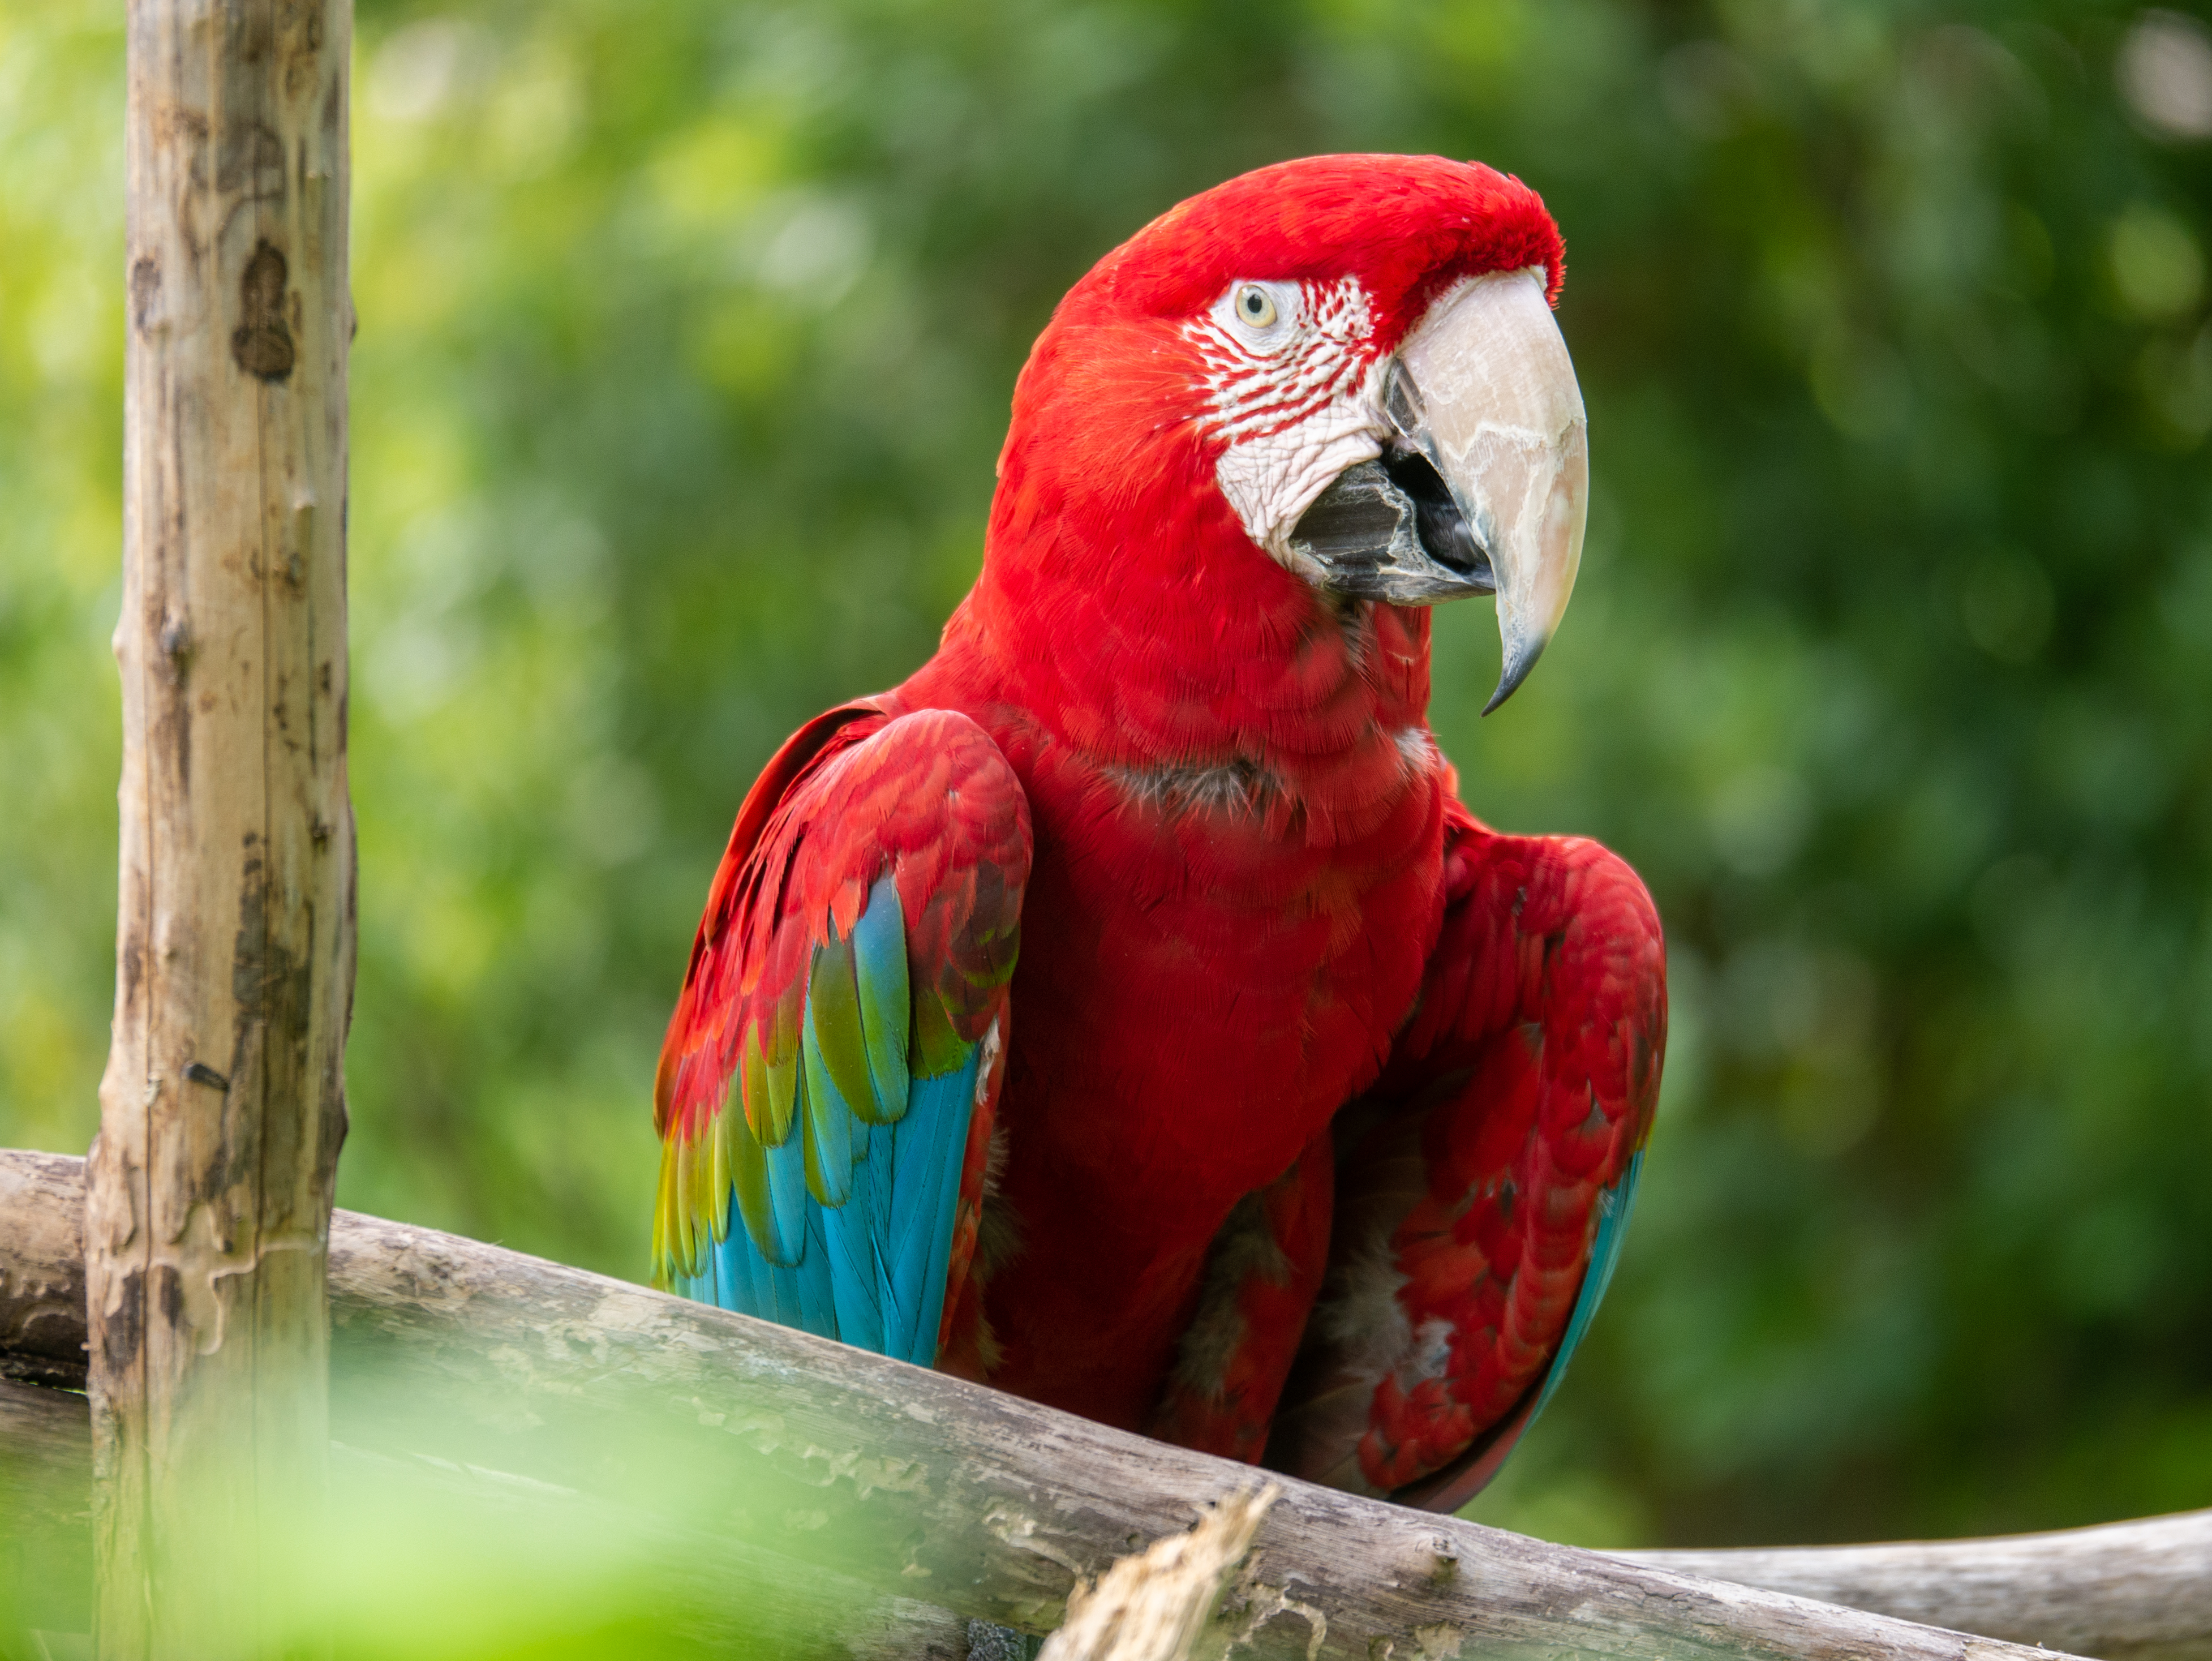 Types of Parrot Birds: "parrot species pictures", "varieties of parrots", "different types of parrots"